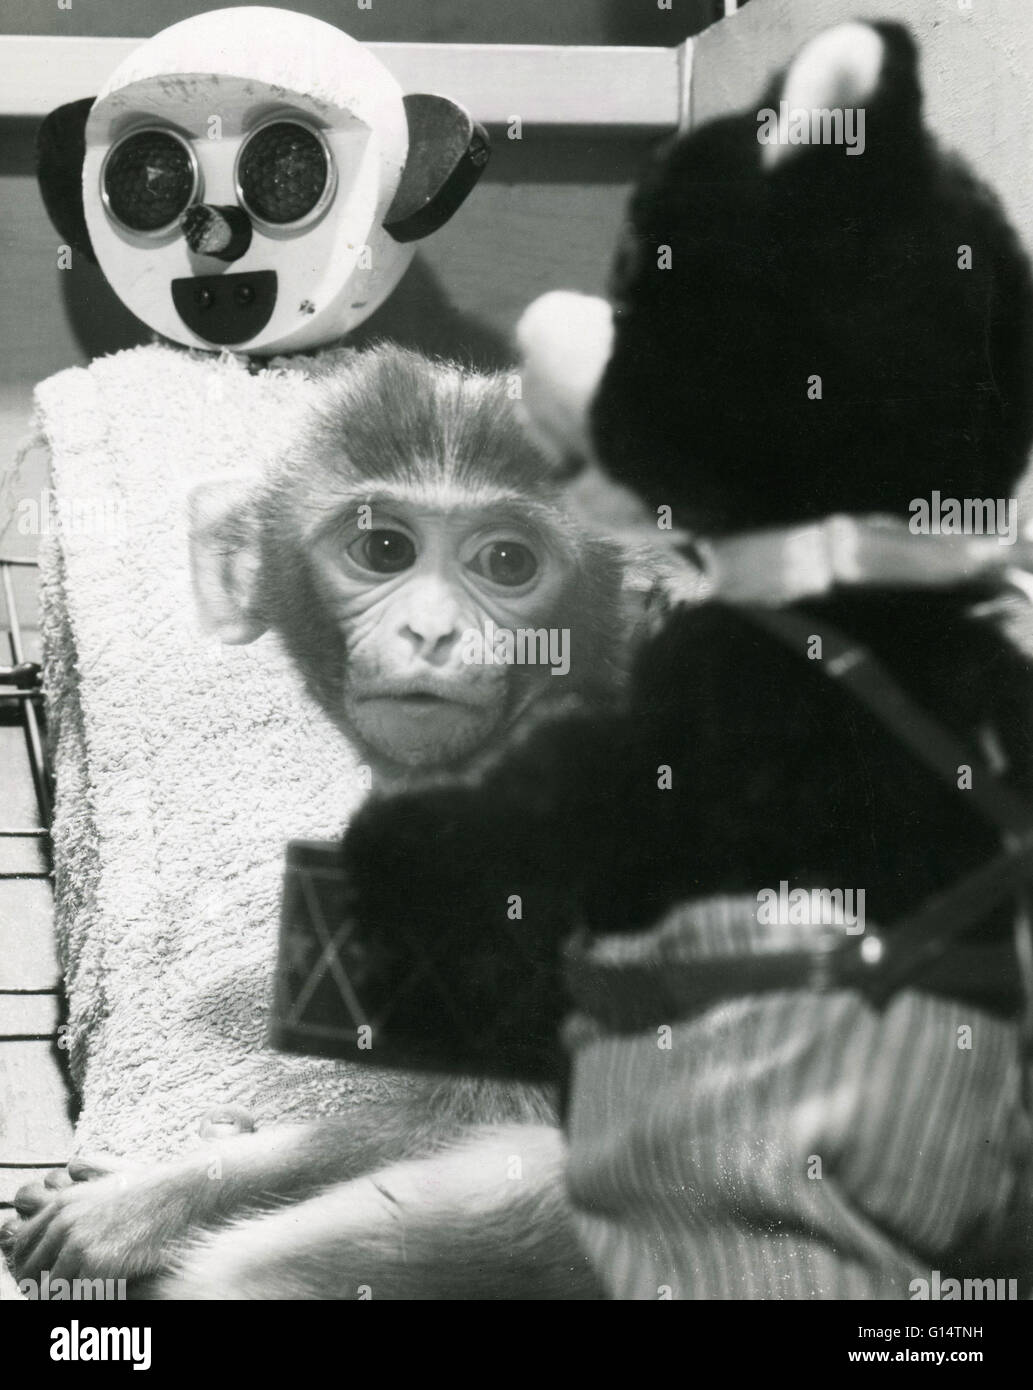 Un neonato di scimmia Rhesus (macaca mulatta) con panno di sua madre surrogata e un orsacchiotto durante un esperimento sugli animali. Privazione materna esperimenti eseguiti da Harry Harlow dell'Università del Wisconsin negli anni cinquanta coinvolti separazione monke infantile Foto Stock